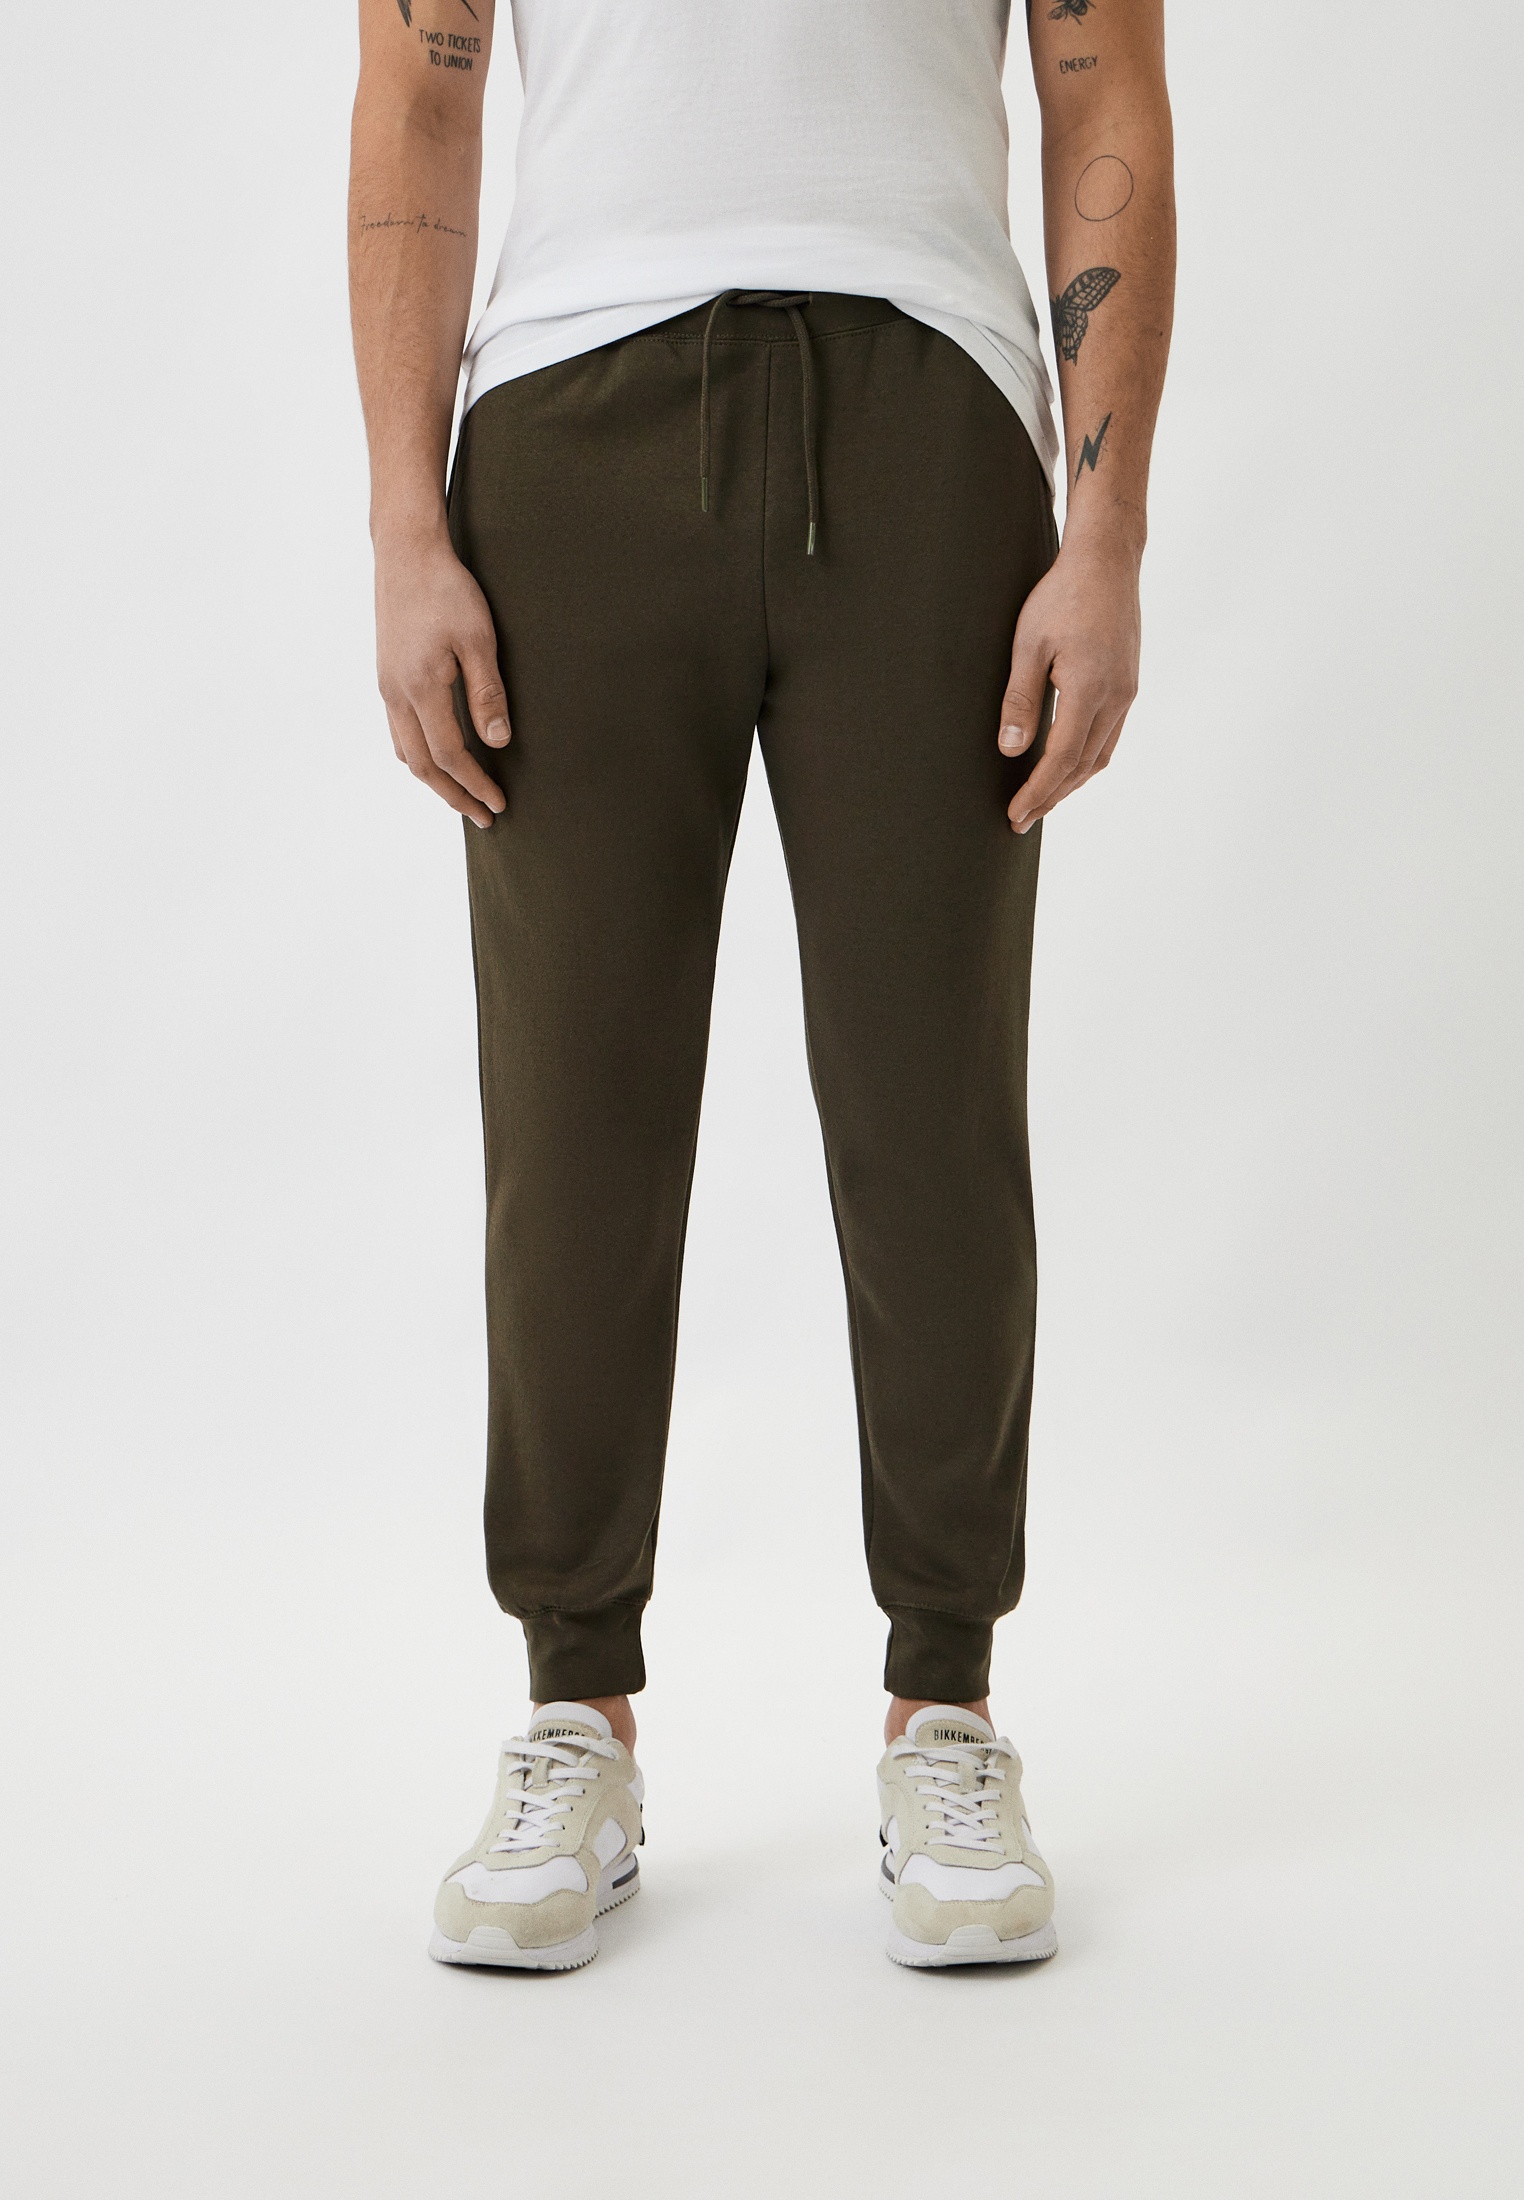 Мужские спортивные брюки Baldinini (Балдинини) B-OLM-M008: изображение 1